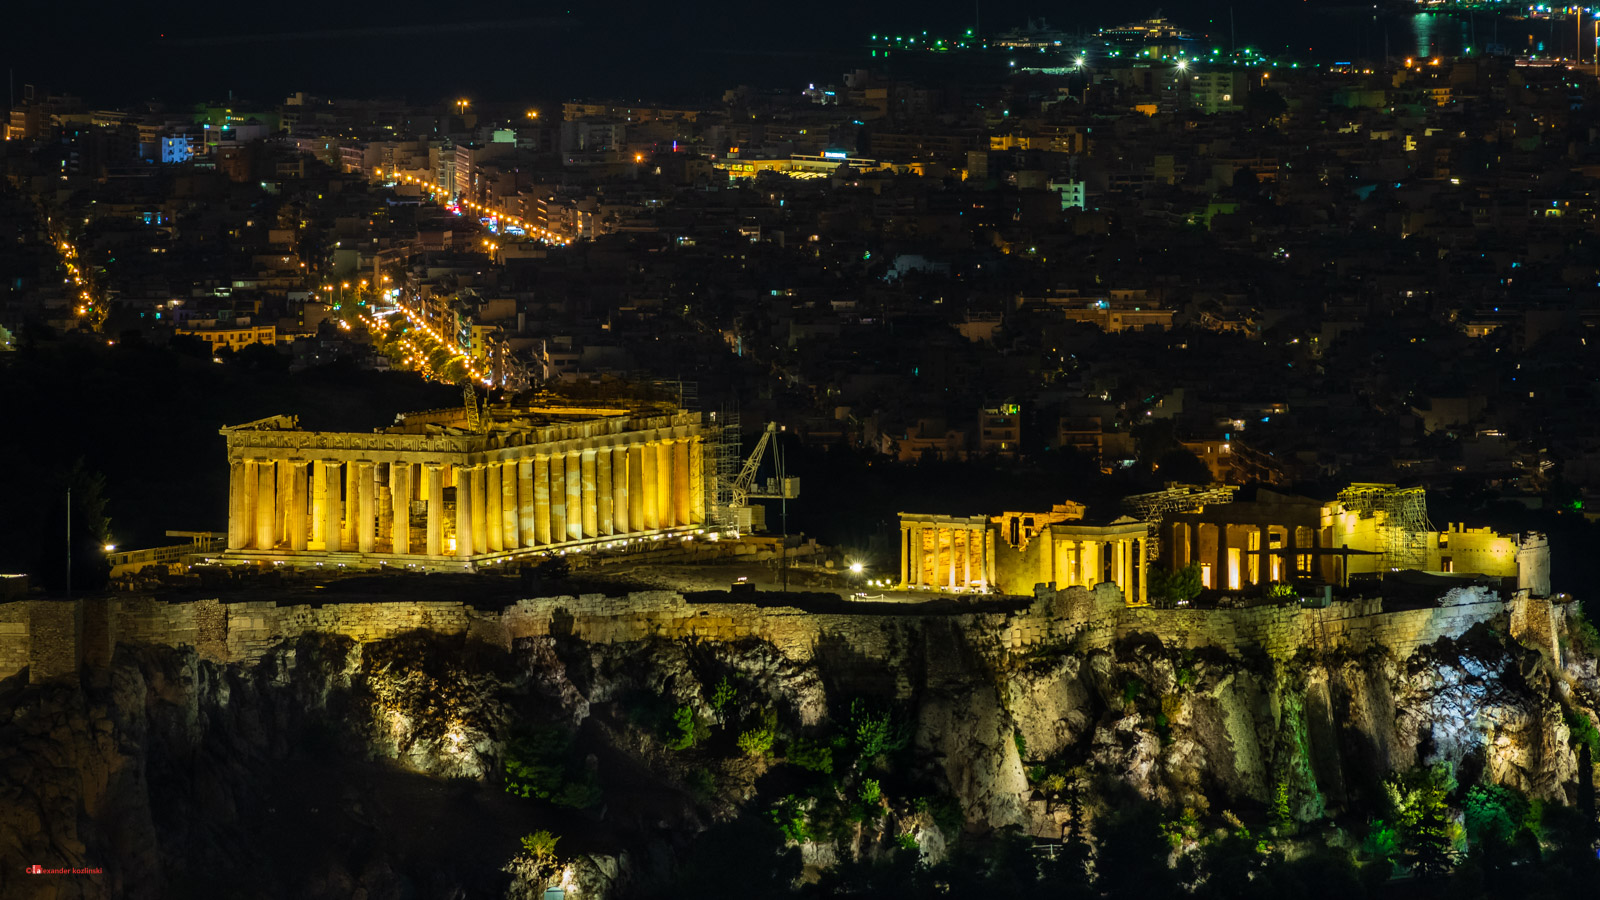 View of the Parthenon from the Likavitou mountain